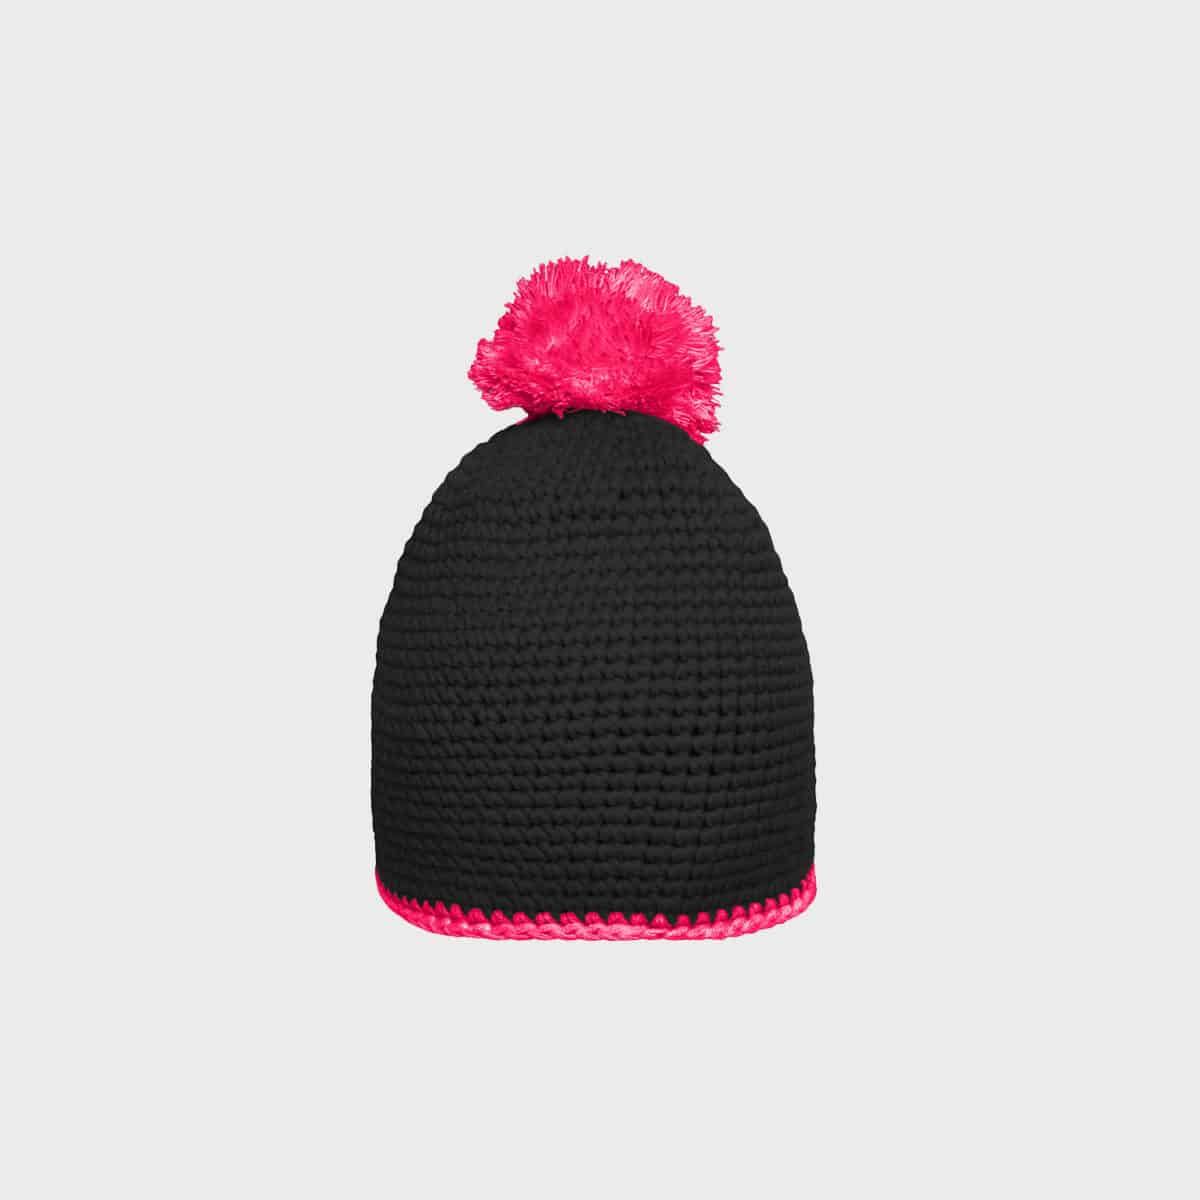 berretto a pompon con fascia a contrasto nero-rosa-acquista un ricamo di manifattura